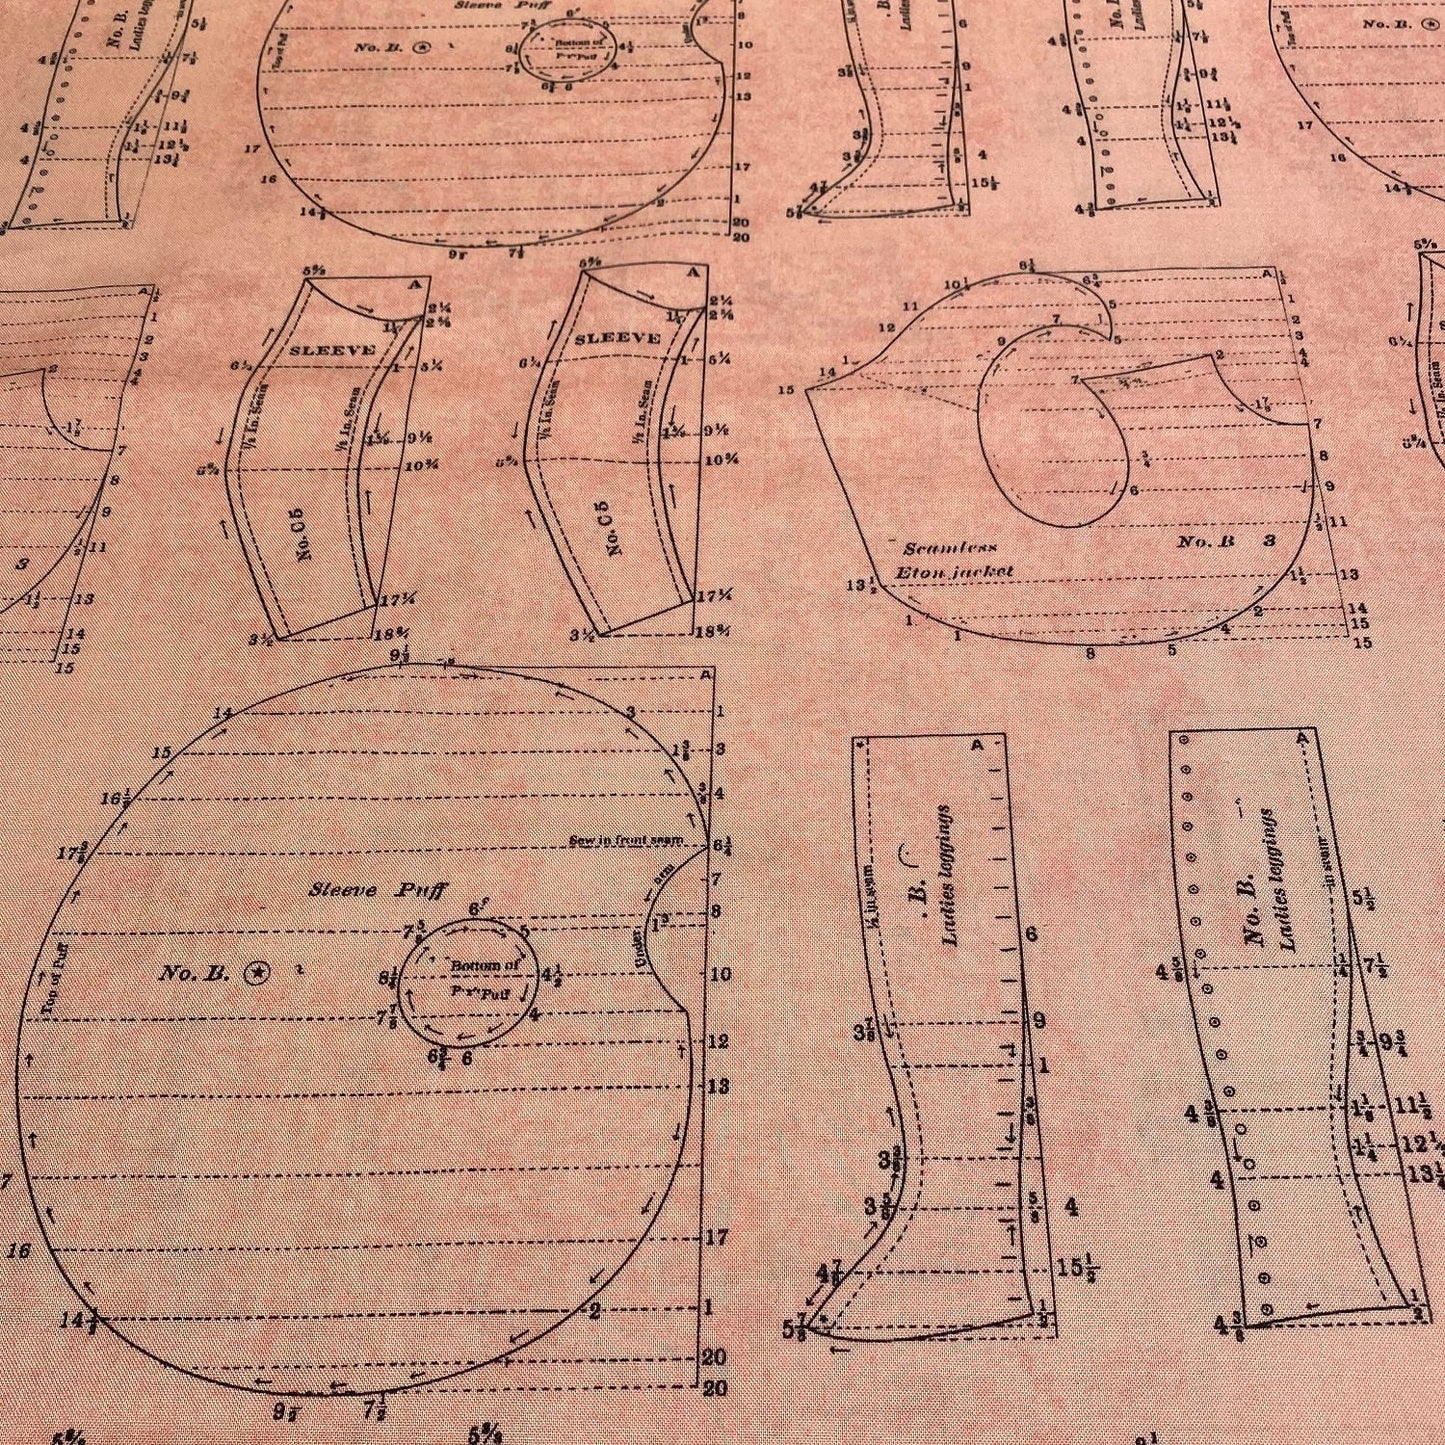 QT-Fabrics Handmaids Schnittmuster Nähen Zeichnung Maßzeichnung Textilzeichung Skizze Entwurf